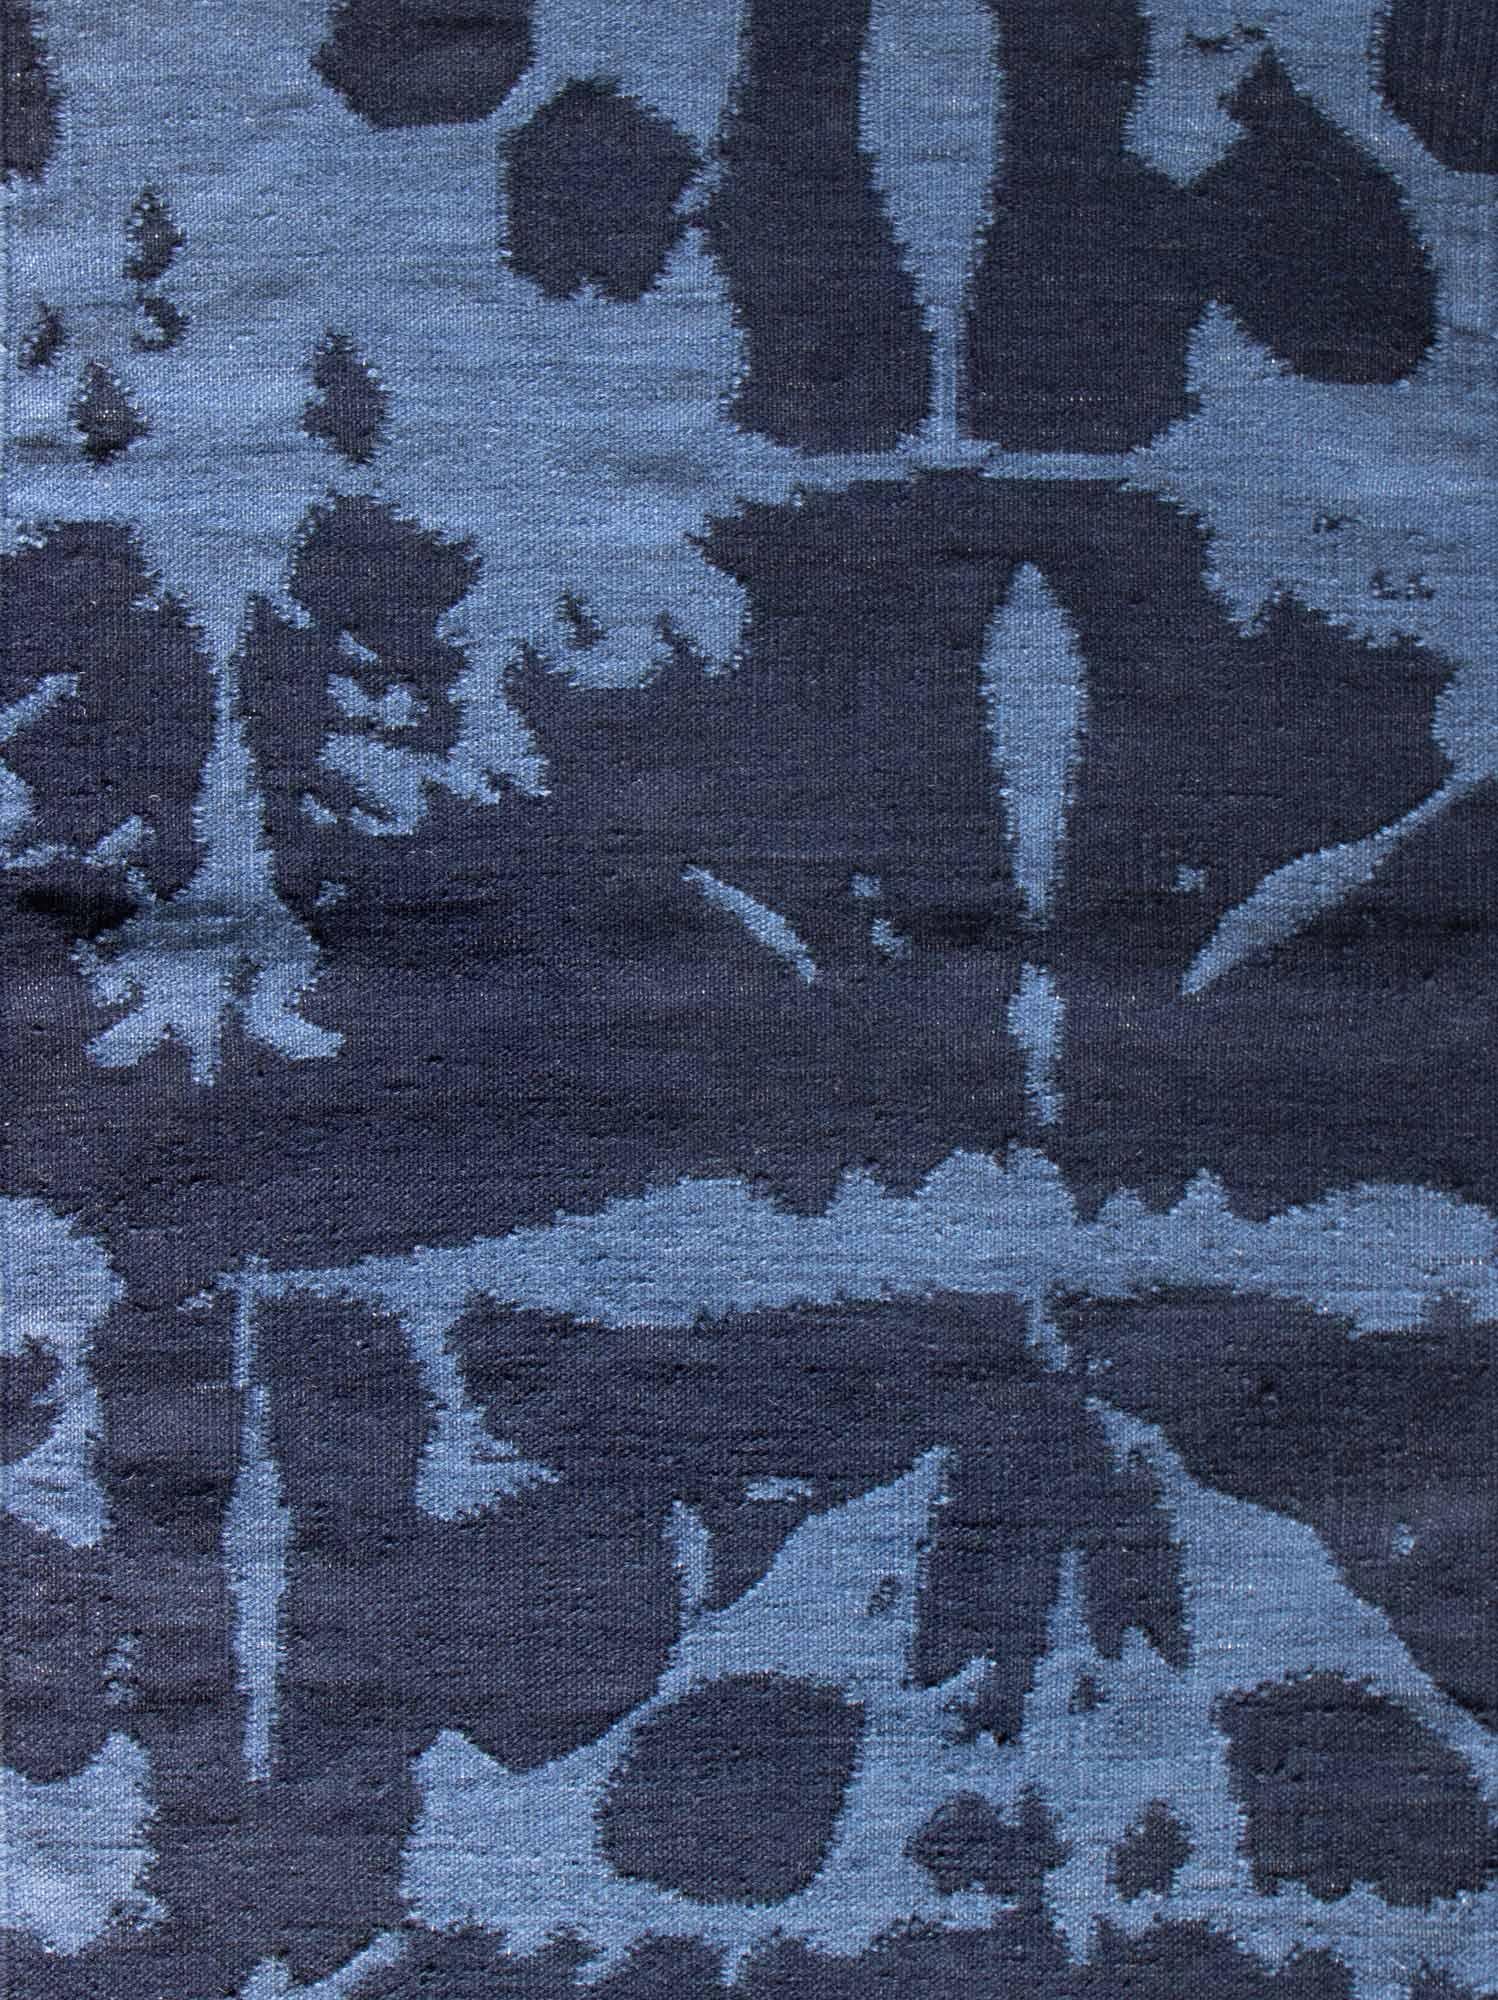 Teppich-Muster: Banda - Indigo
MATERIAL: 100% Neuseelandwolle
Qualität: Flachgewebe, handgewebt 
Größe: 6'-0